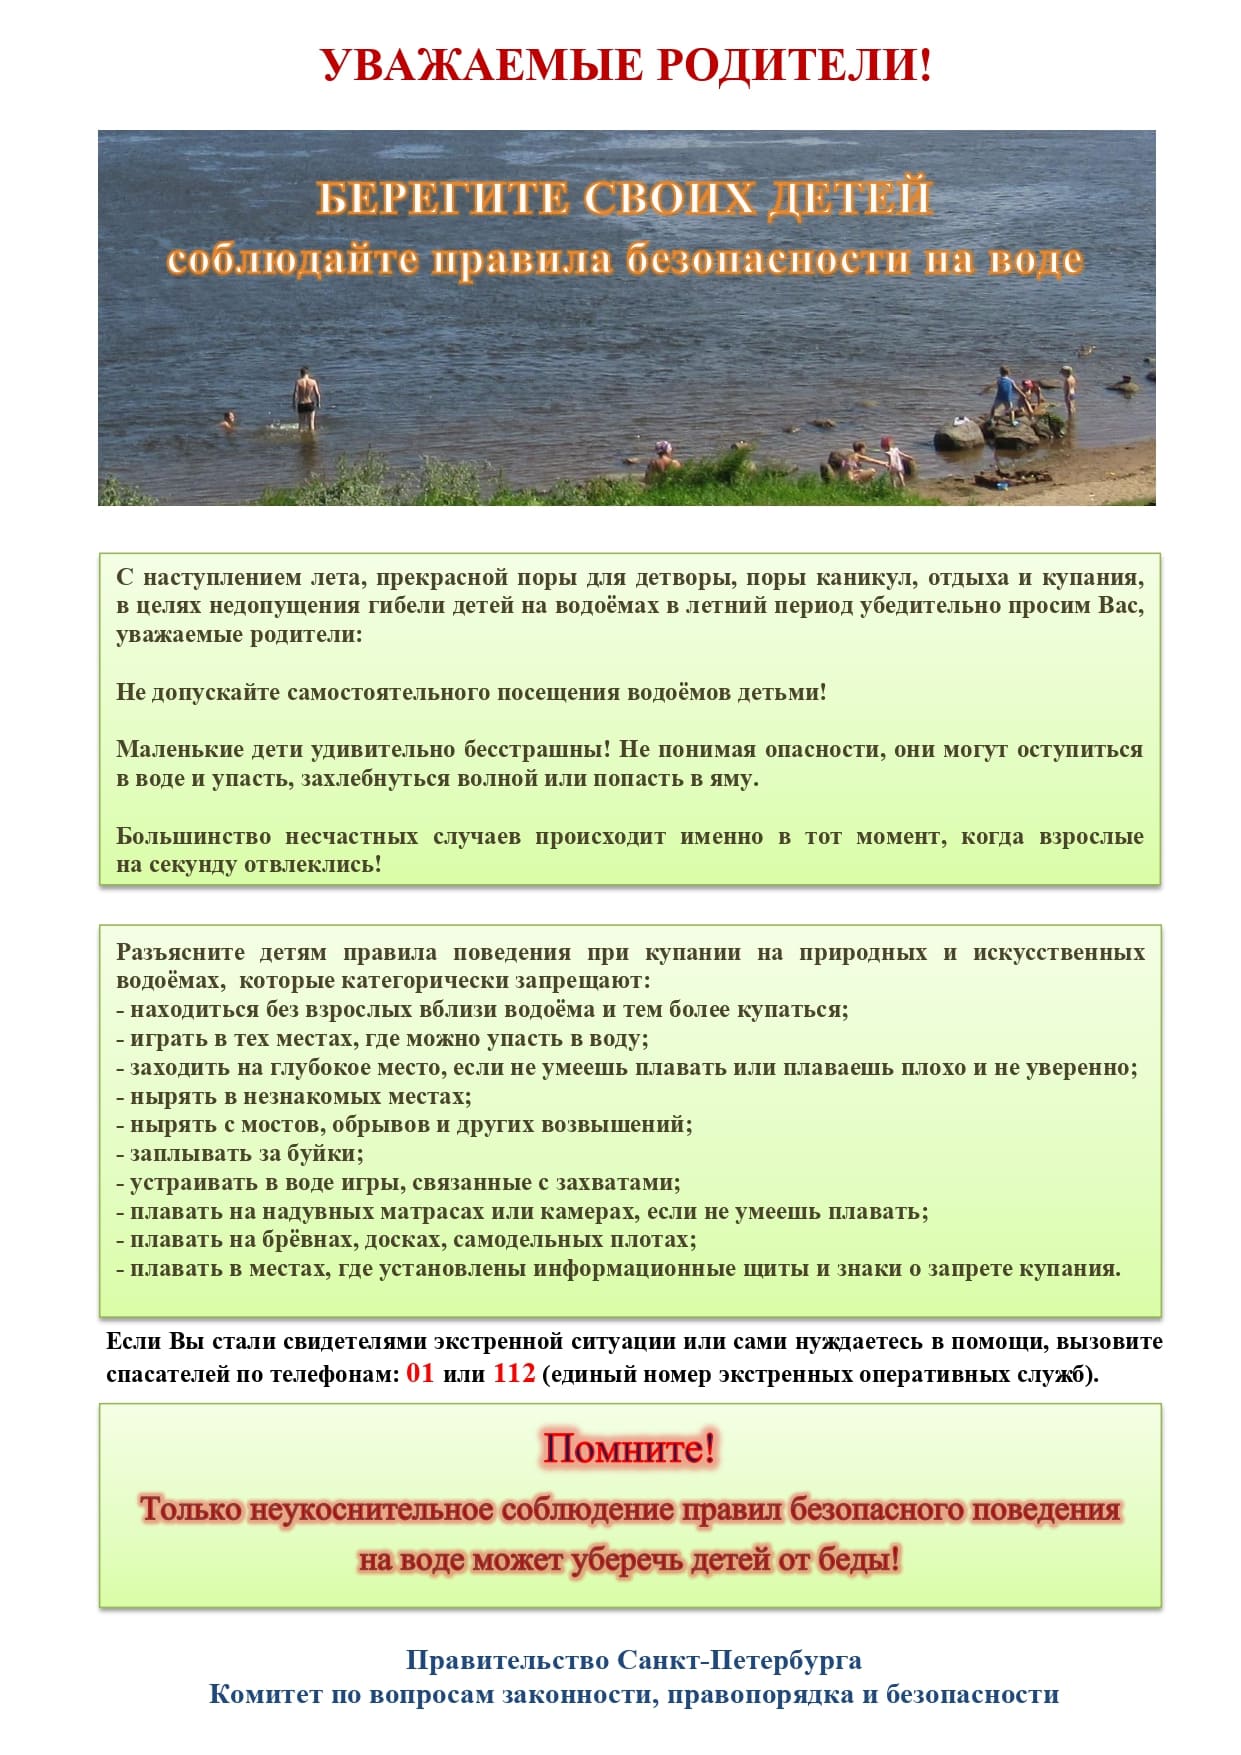 Памятка родителям по запрету купания в неотведённых местах page 0001 1